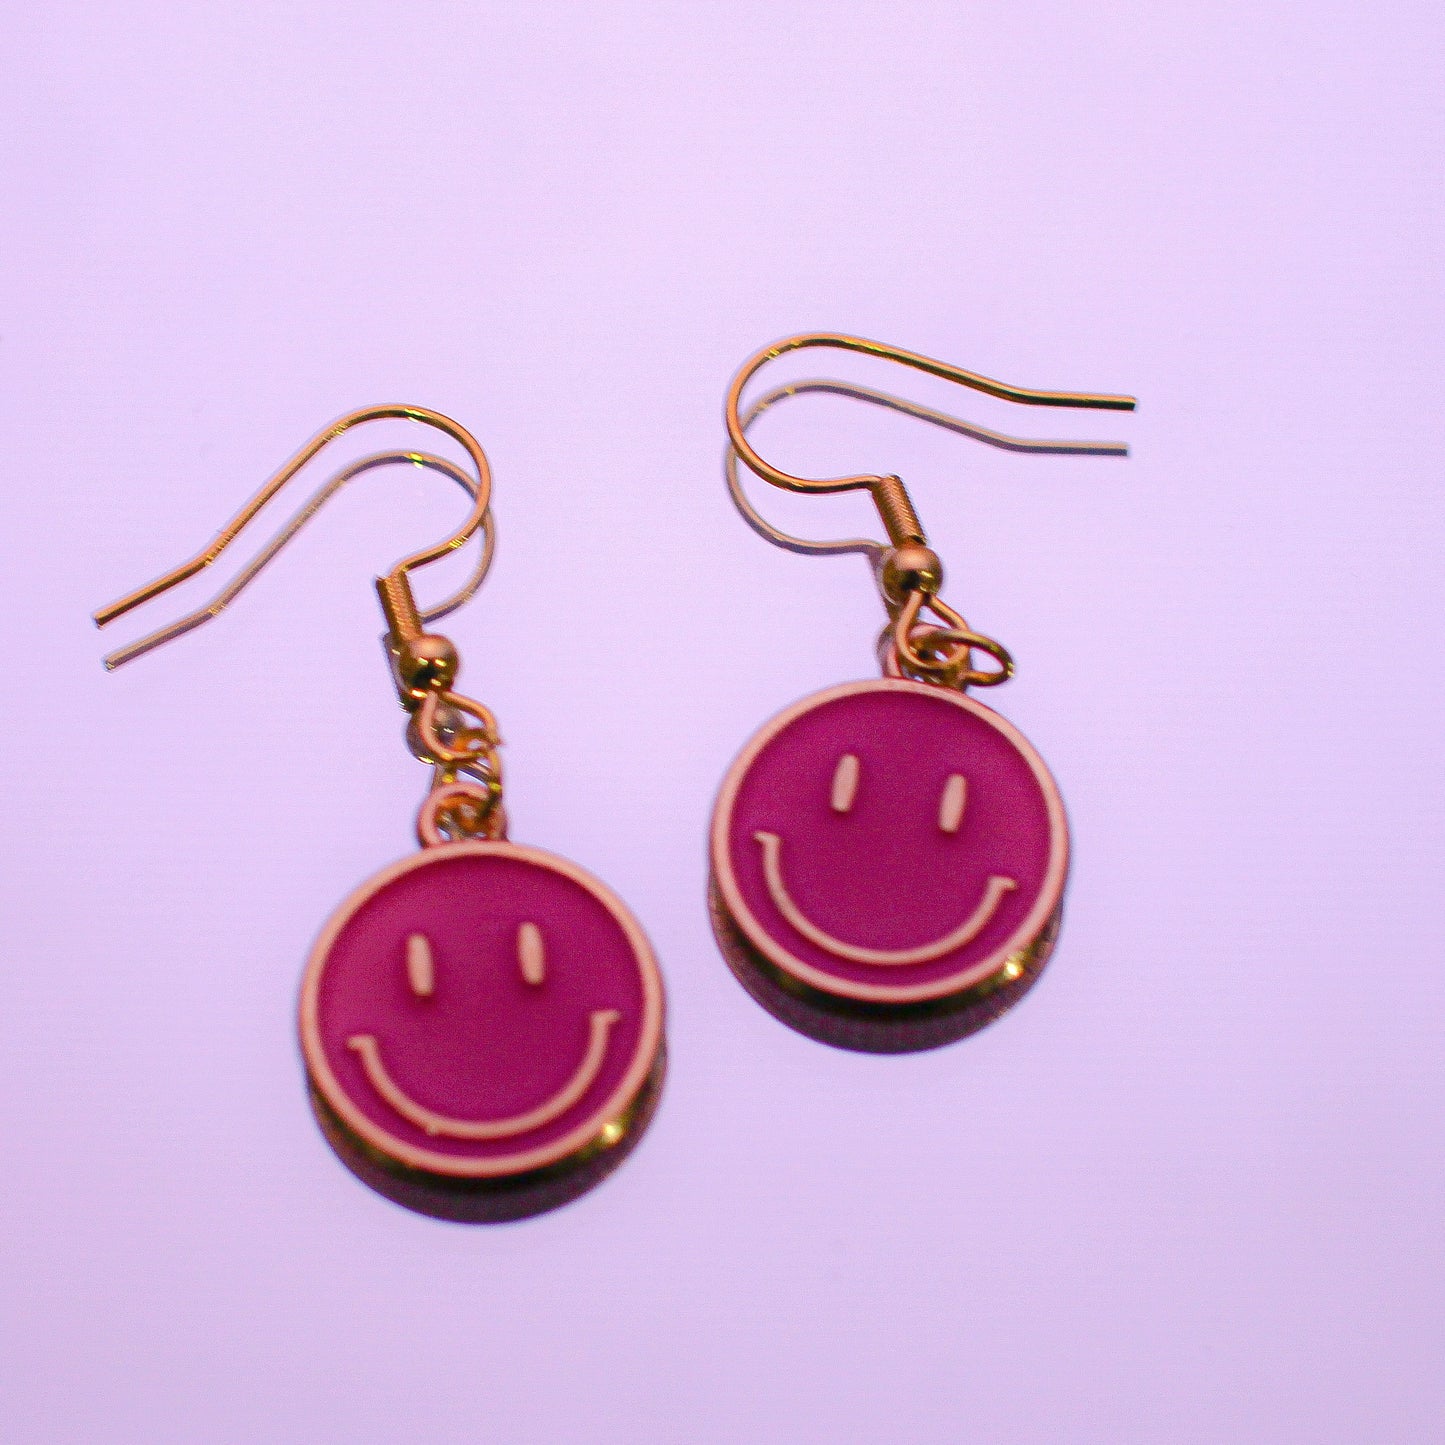 Hot Pink Smiley Earrings